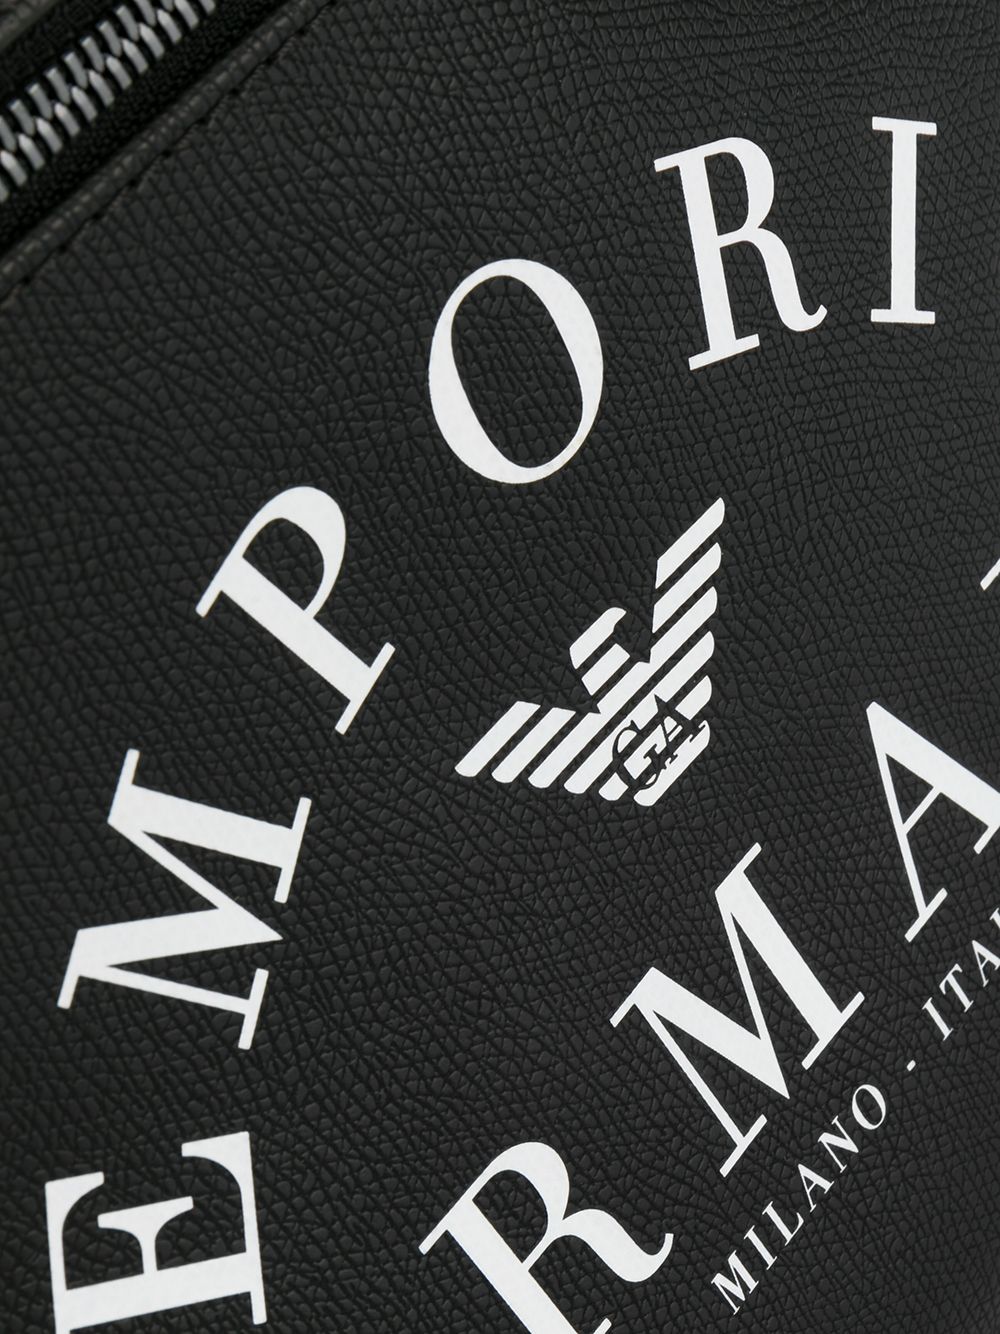 фото Emporio armani рюкзак с логотипом